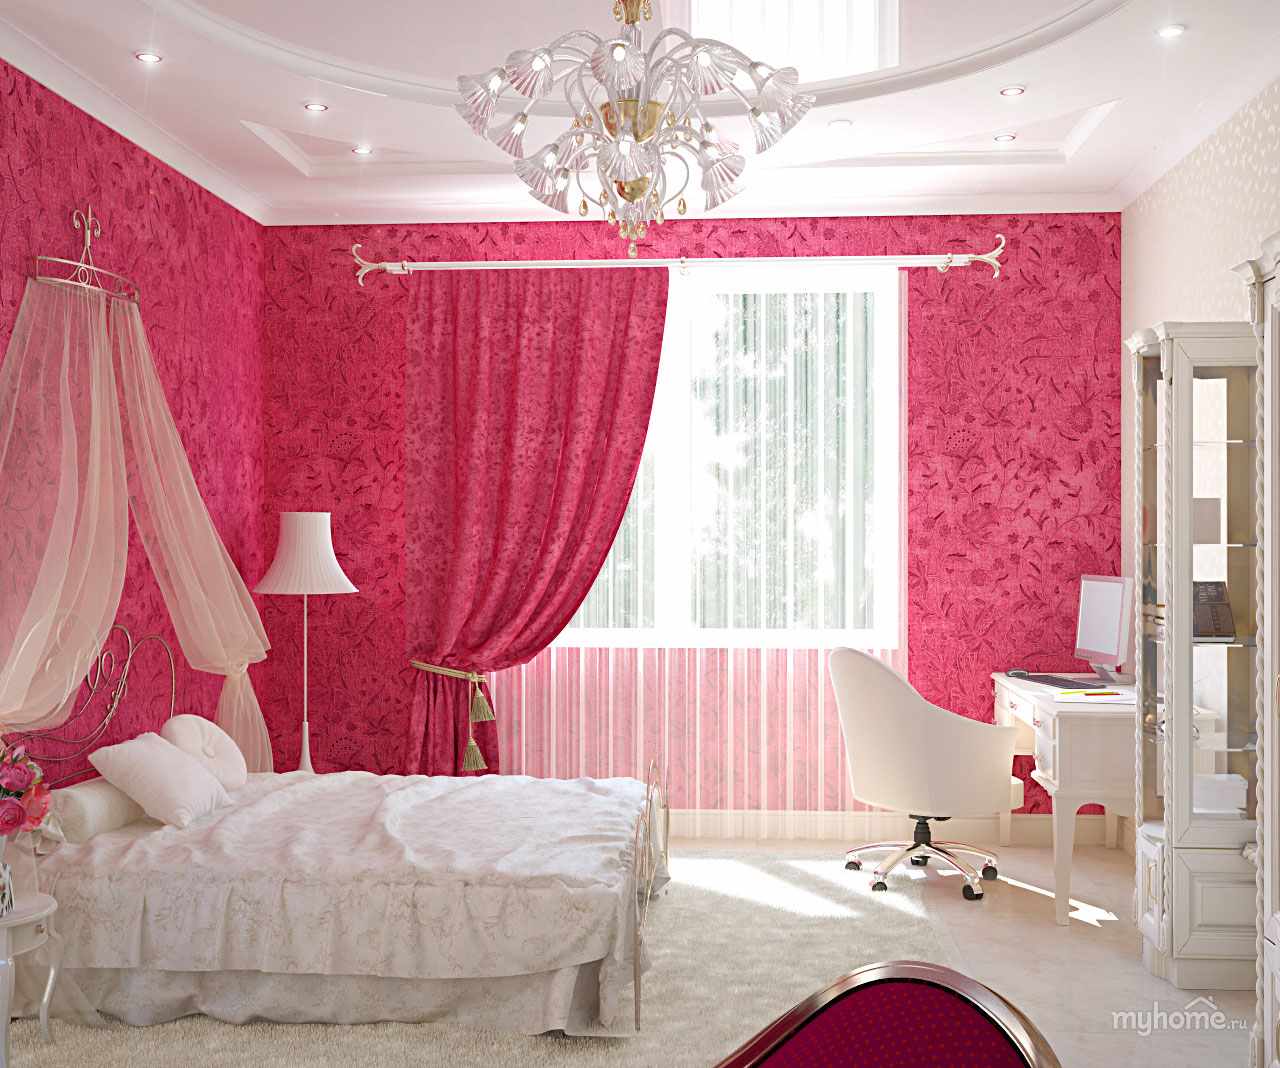 Комната в розовых тонах. Розовые шторы в спальню. Шторы в спальню для девочки. Спальня в розовых тонах. Красивые шторы в комнату девушке.